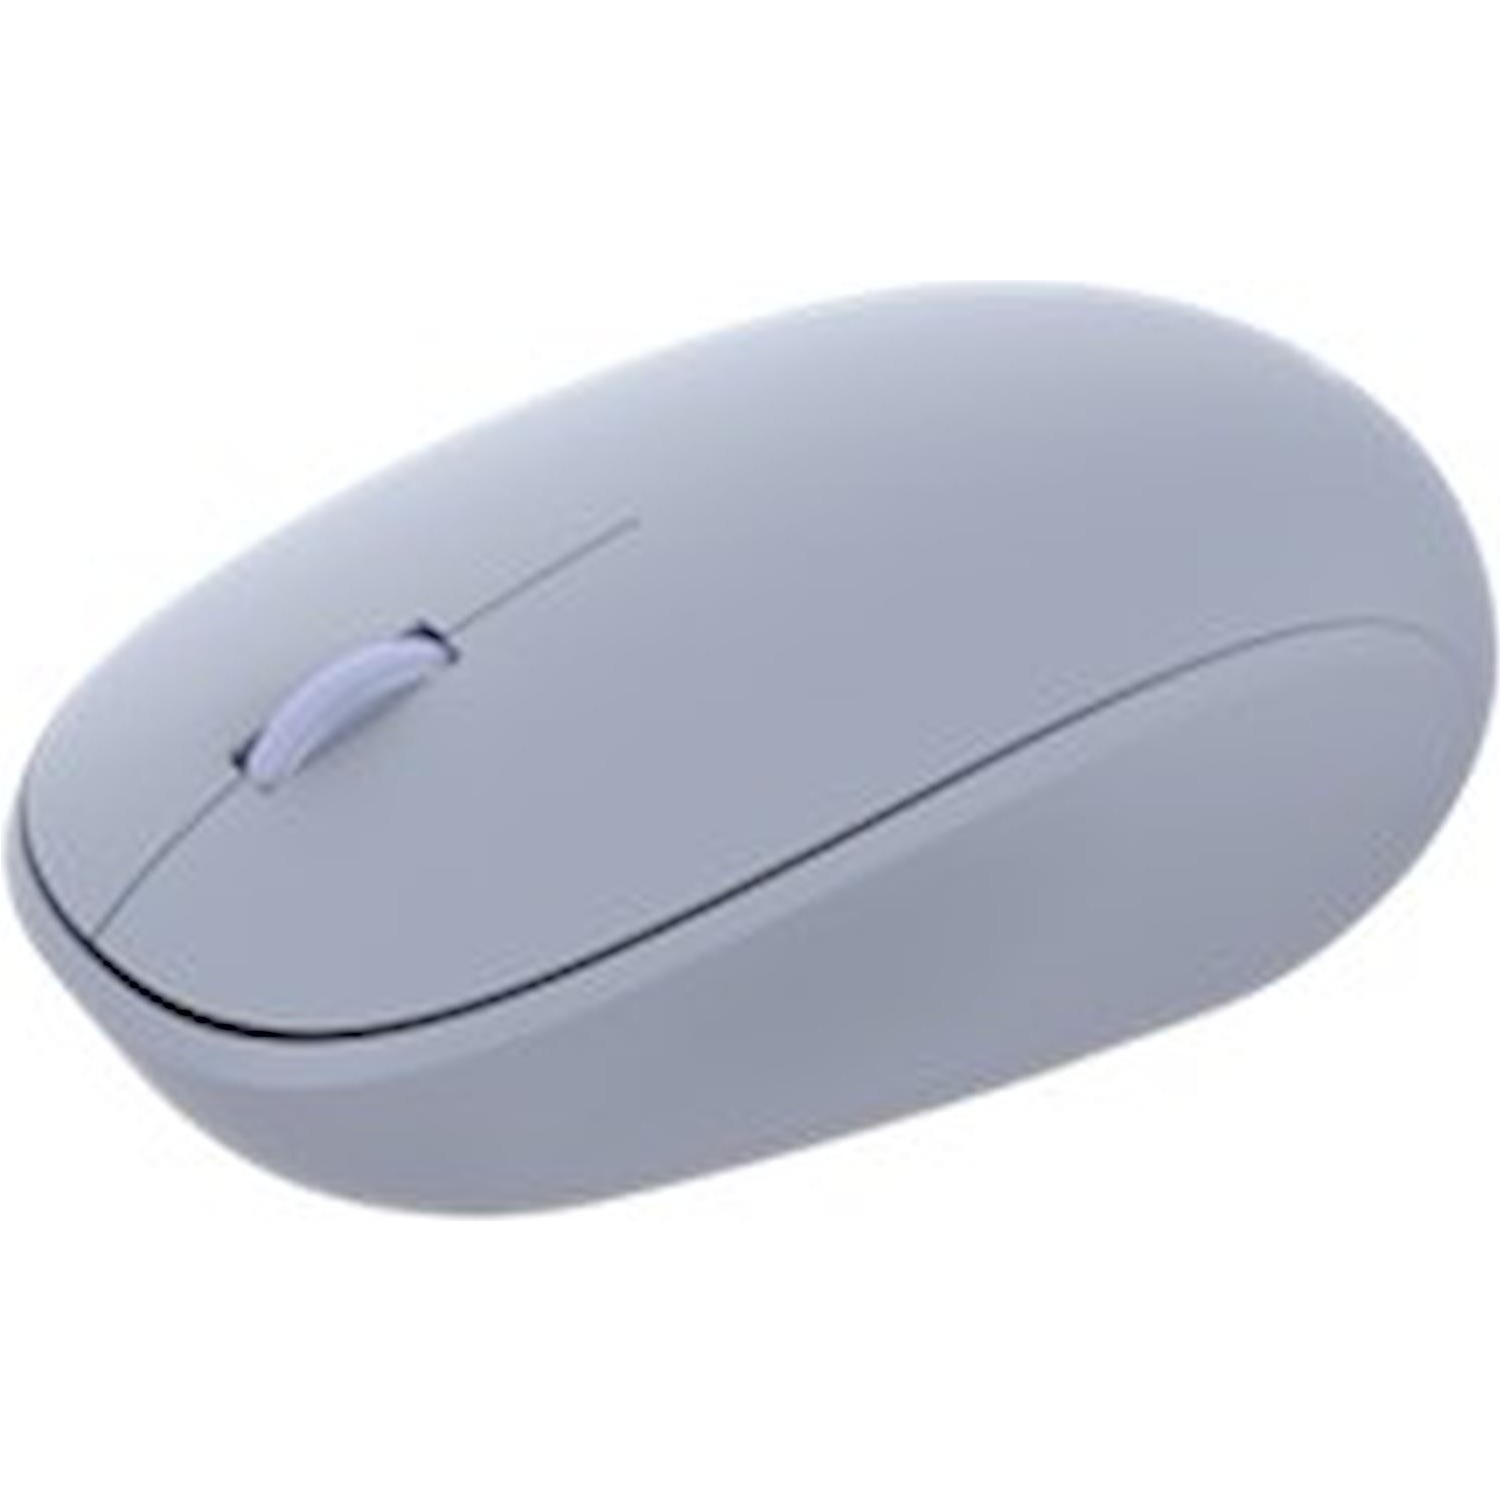 Immagine per Mouse Microsoft LIAONING blu da DIMOStore